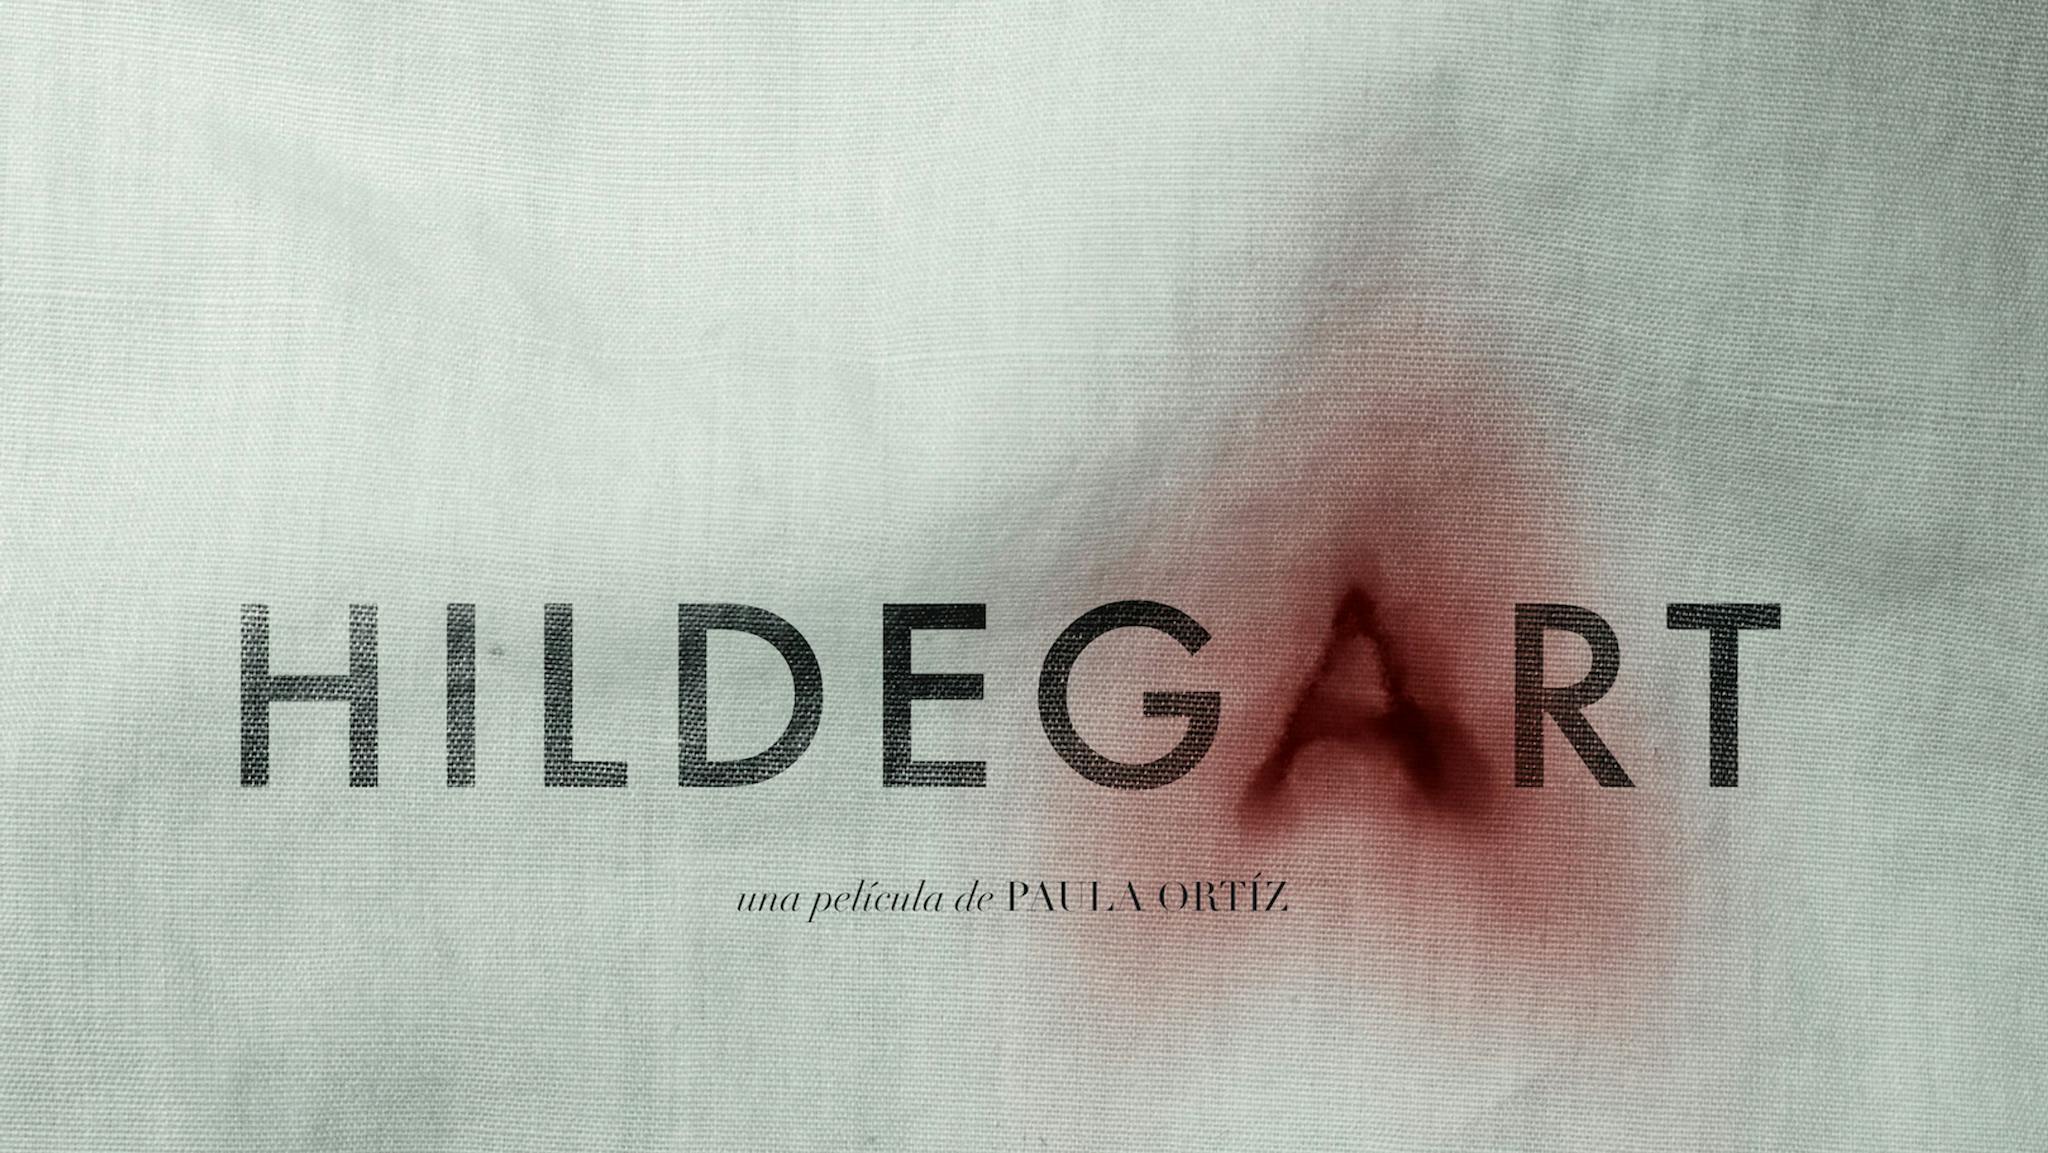 Imagen promocional de 'Hildegart', de Paula Ortiz